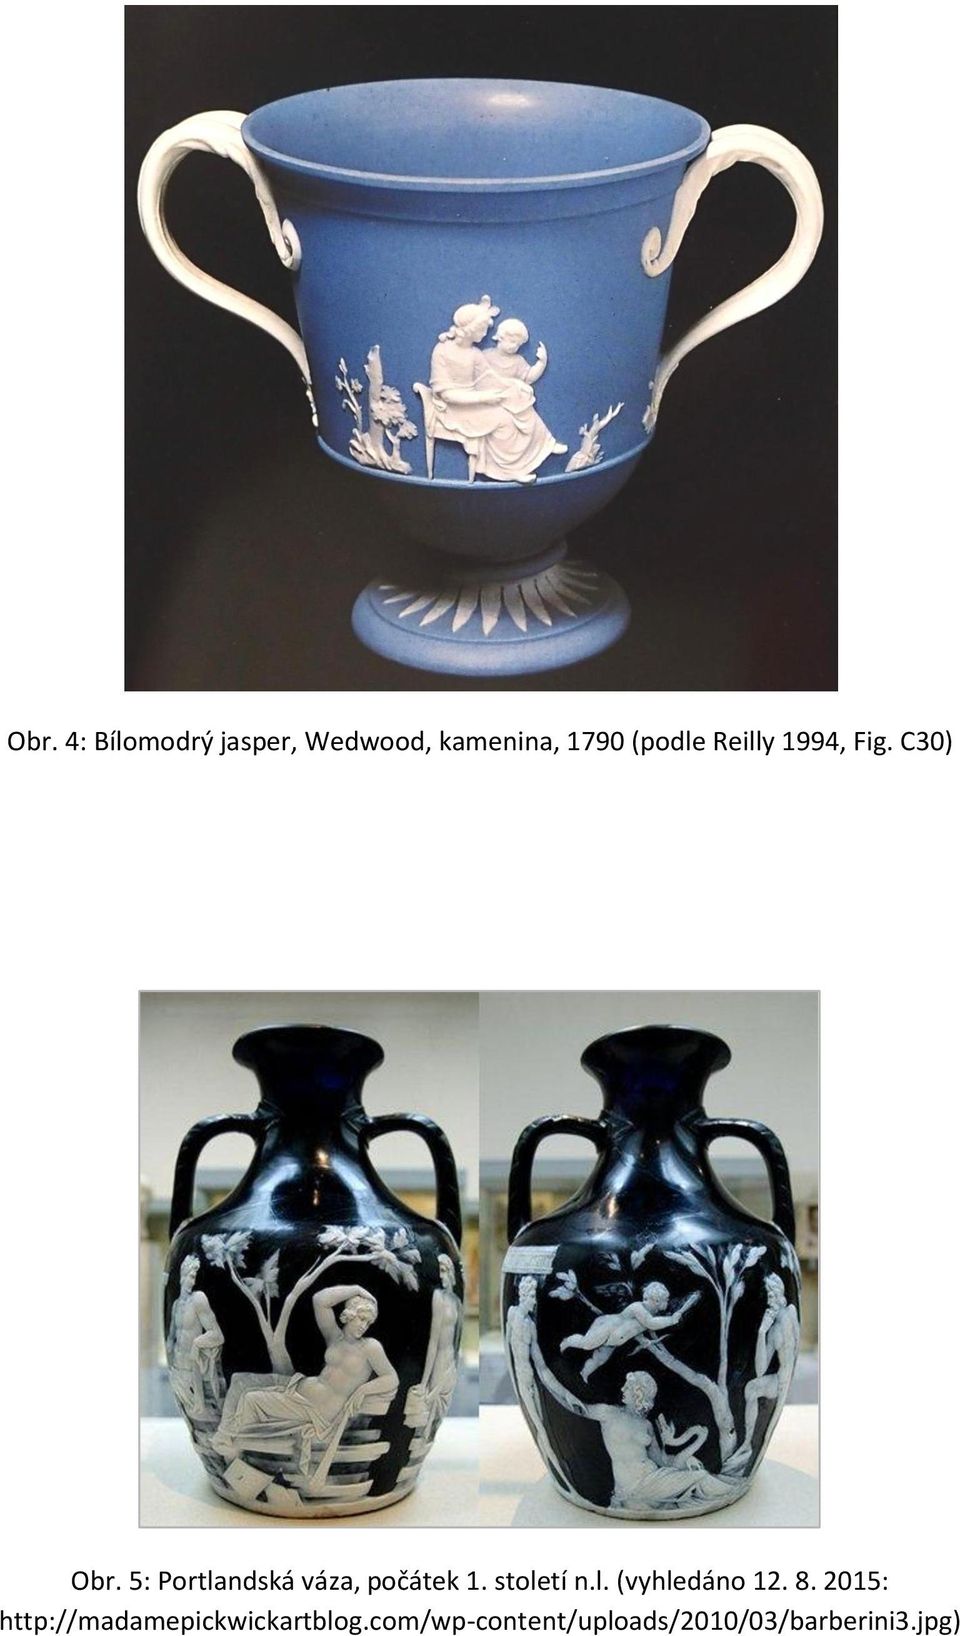 Obr. 1: First Days Vases, Wedgwood, černý basalt, enkaustika, 1769 (podle  Reilly 1994, Fig. 10) - PDF Stažení zdarma